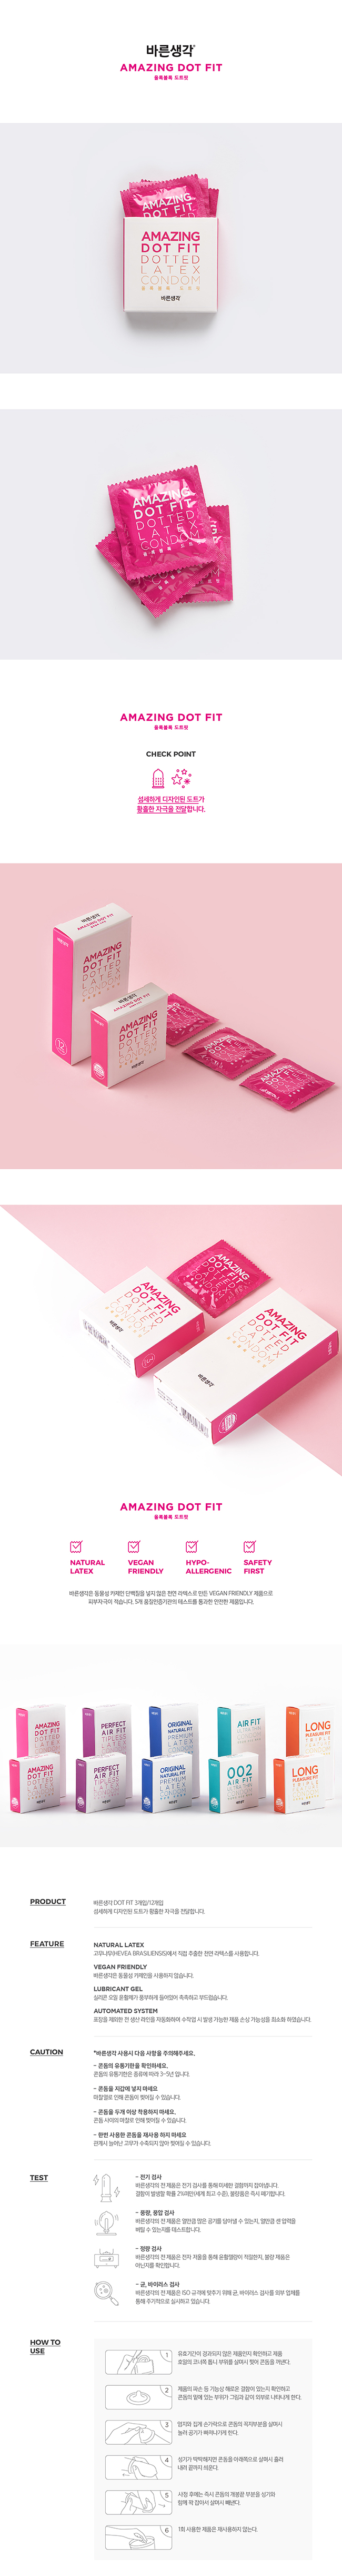 [돌기형] 어메이징 도트 핏 도티드 라텍스 콘돔 1box 12p(Amazing Dot Fit Dotted Latex Condom)